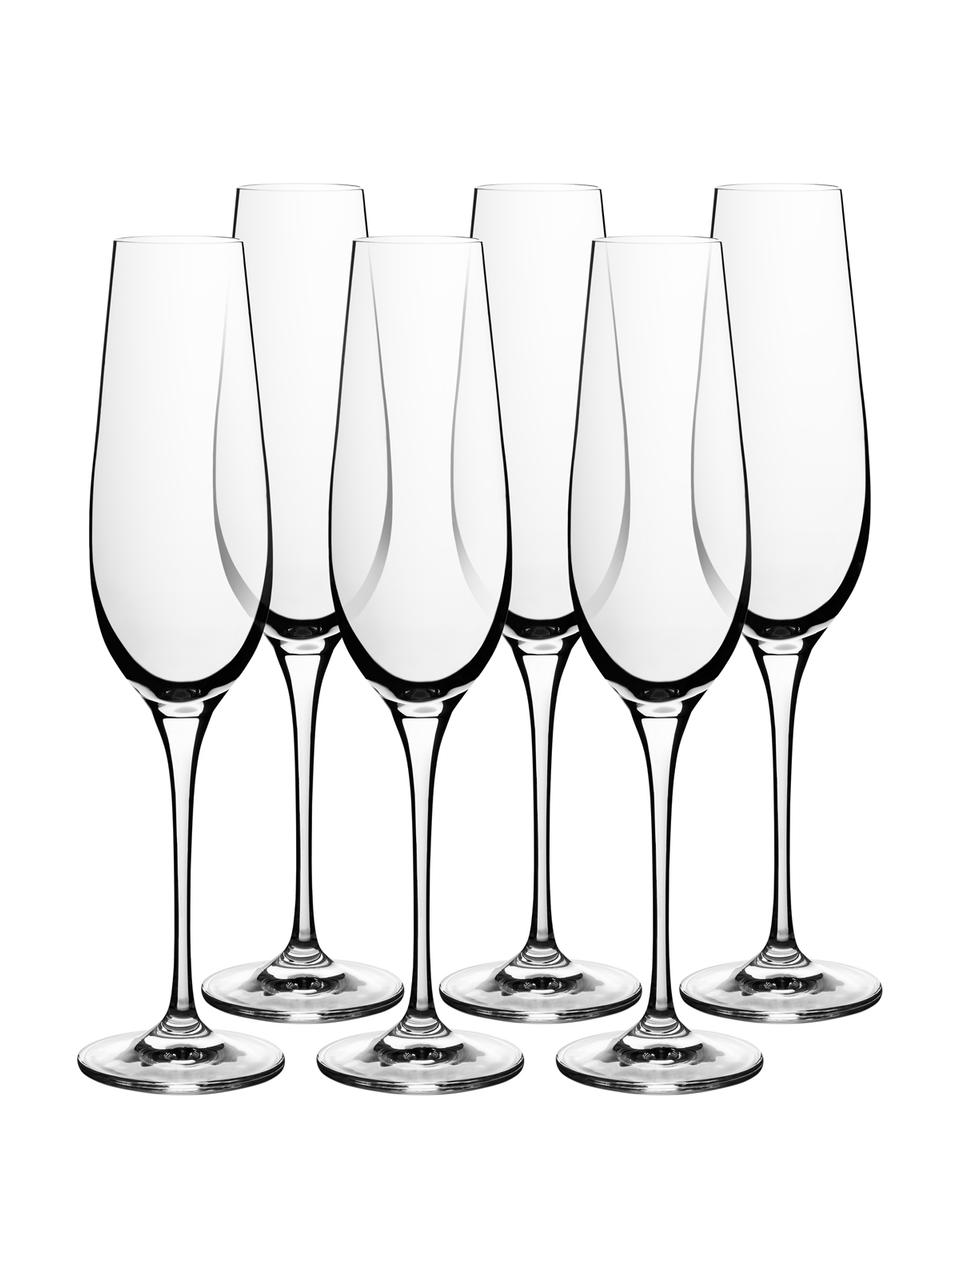 Kryształowy kieliszek do szampana Harmony, 6 szt., Szkło kryształowe o najwyższym połysku, szczególnie widocznym poprzez odbijanie światła
Magiczny blask sprawia, że każdy łyk szampana jest wyjątkowym doznaniem, Transparentny, 200 ml